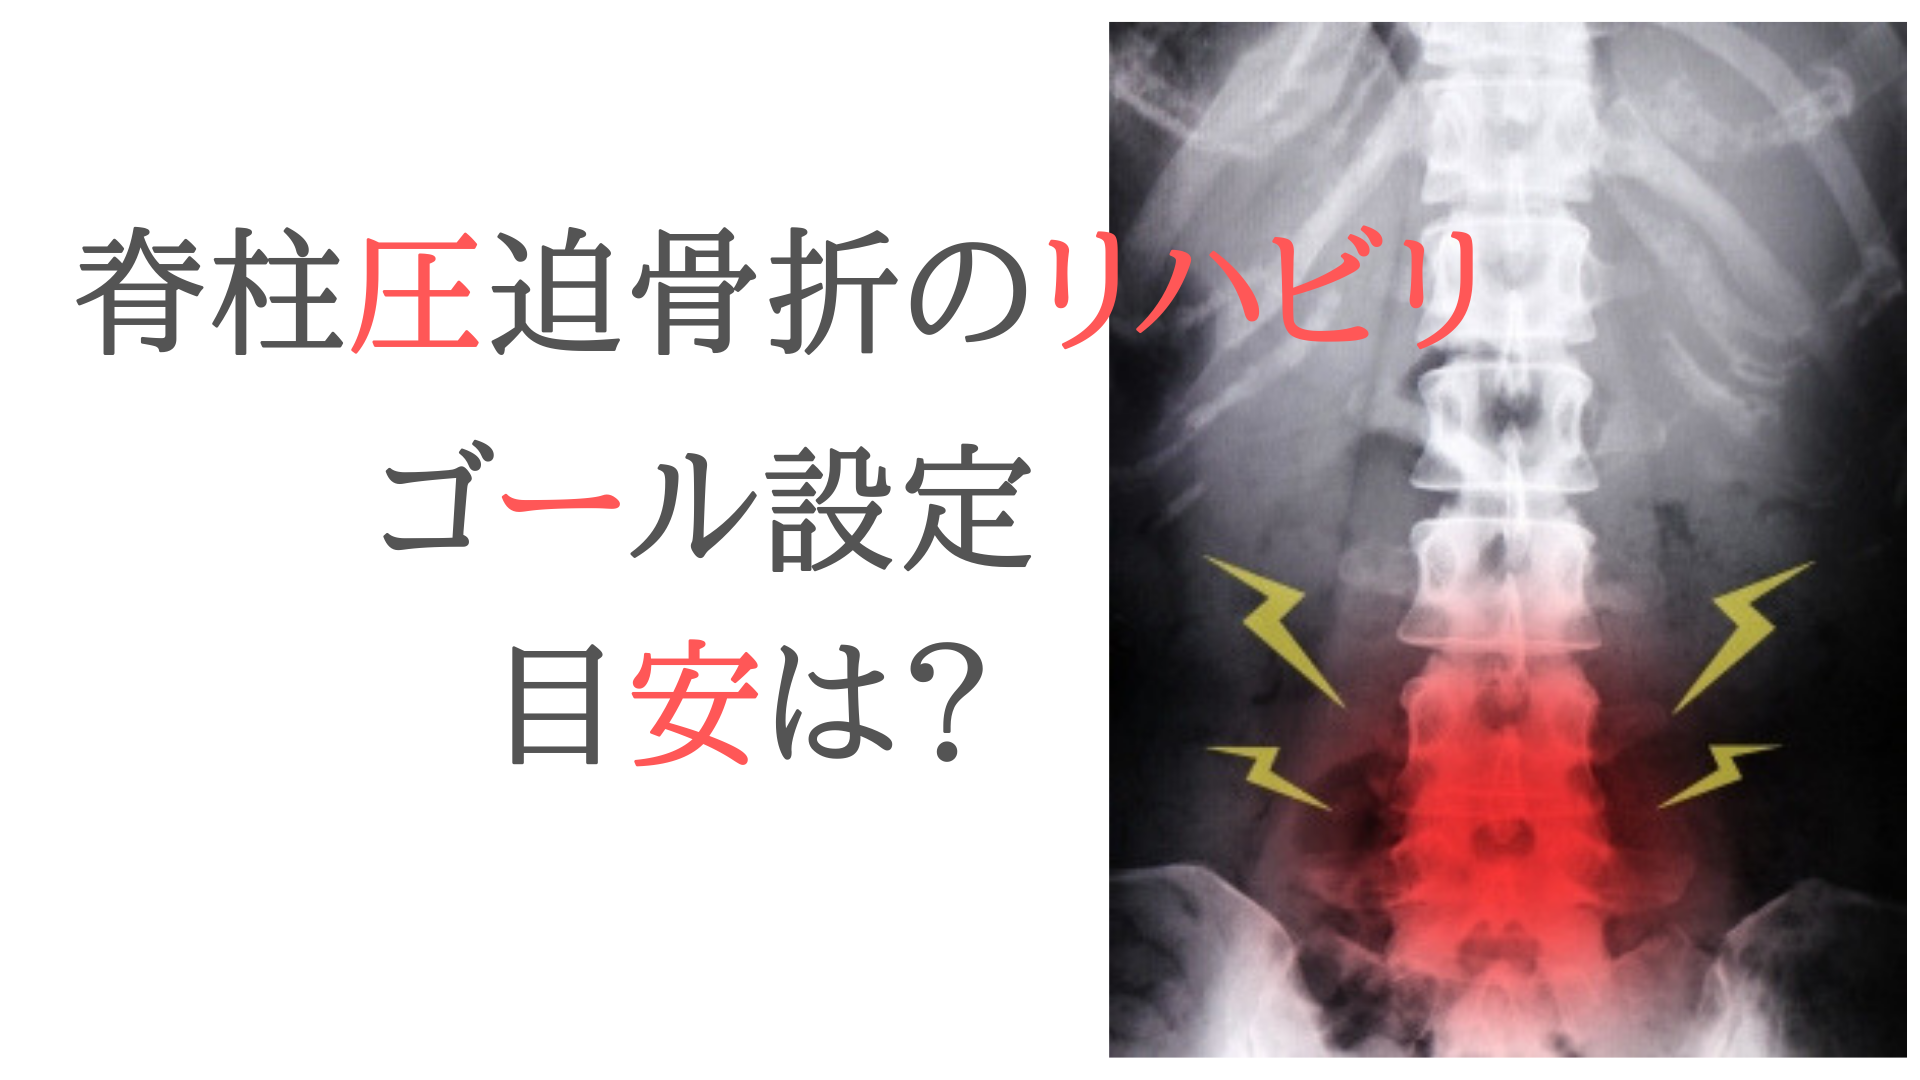 脊柱圧迫骨折の方にリハビリの「ゴール設定」を提案する目安は？